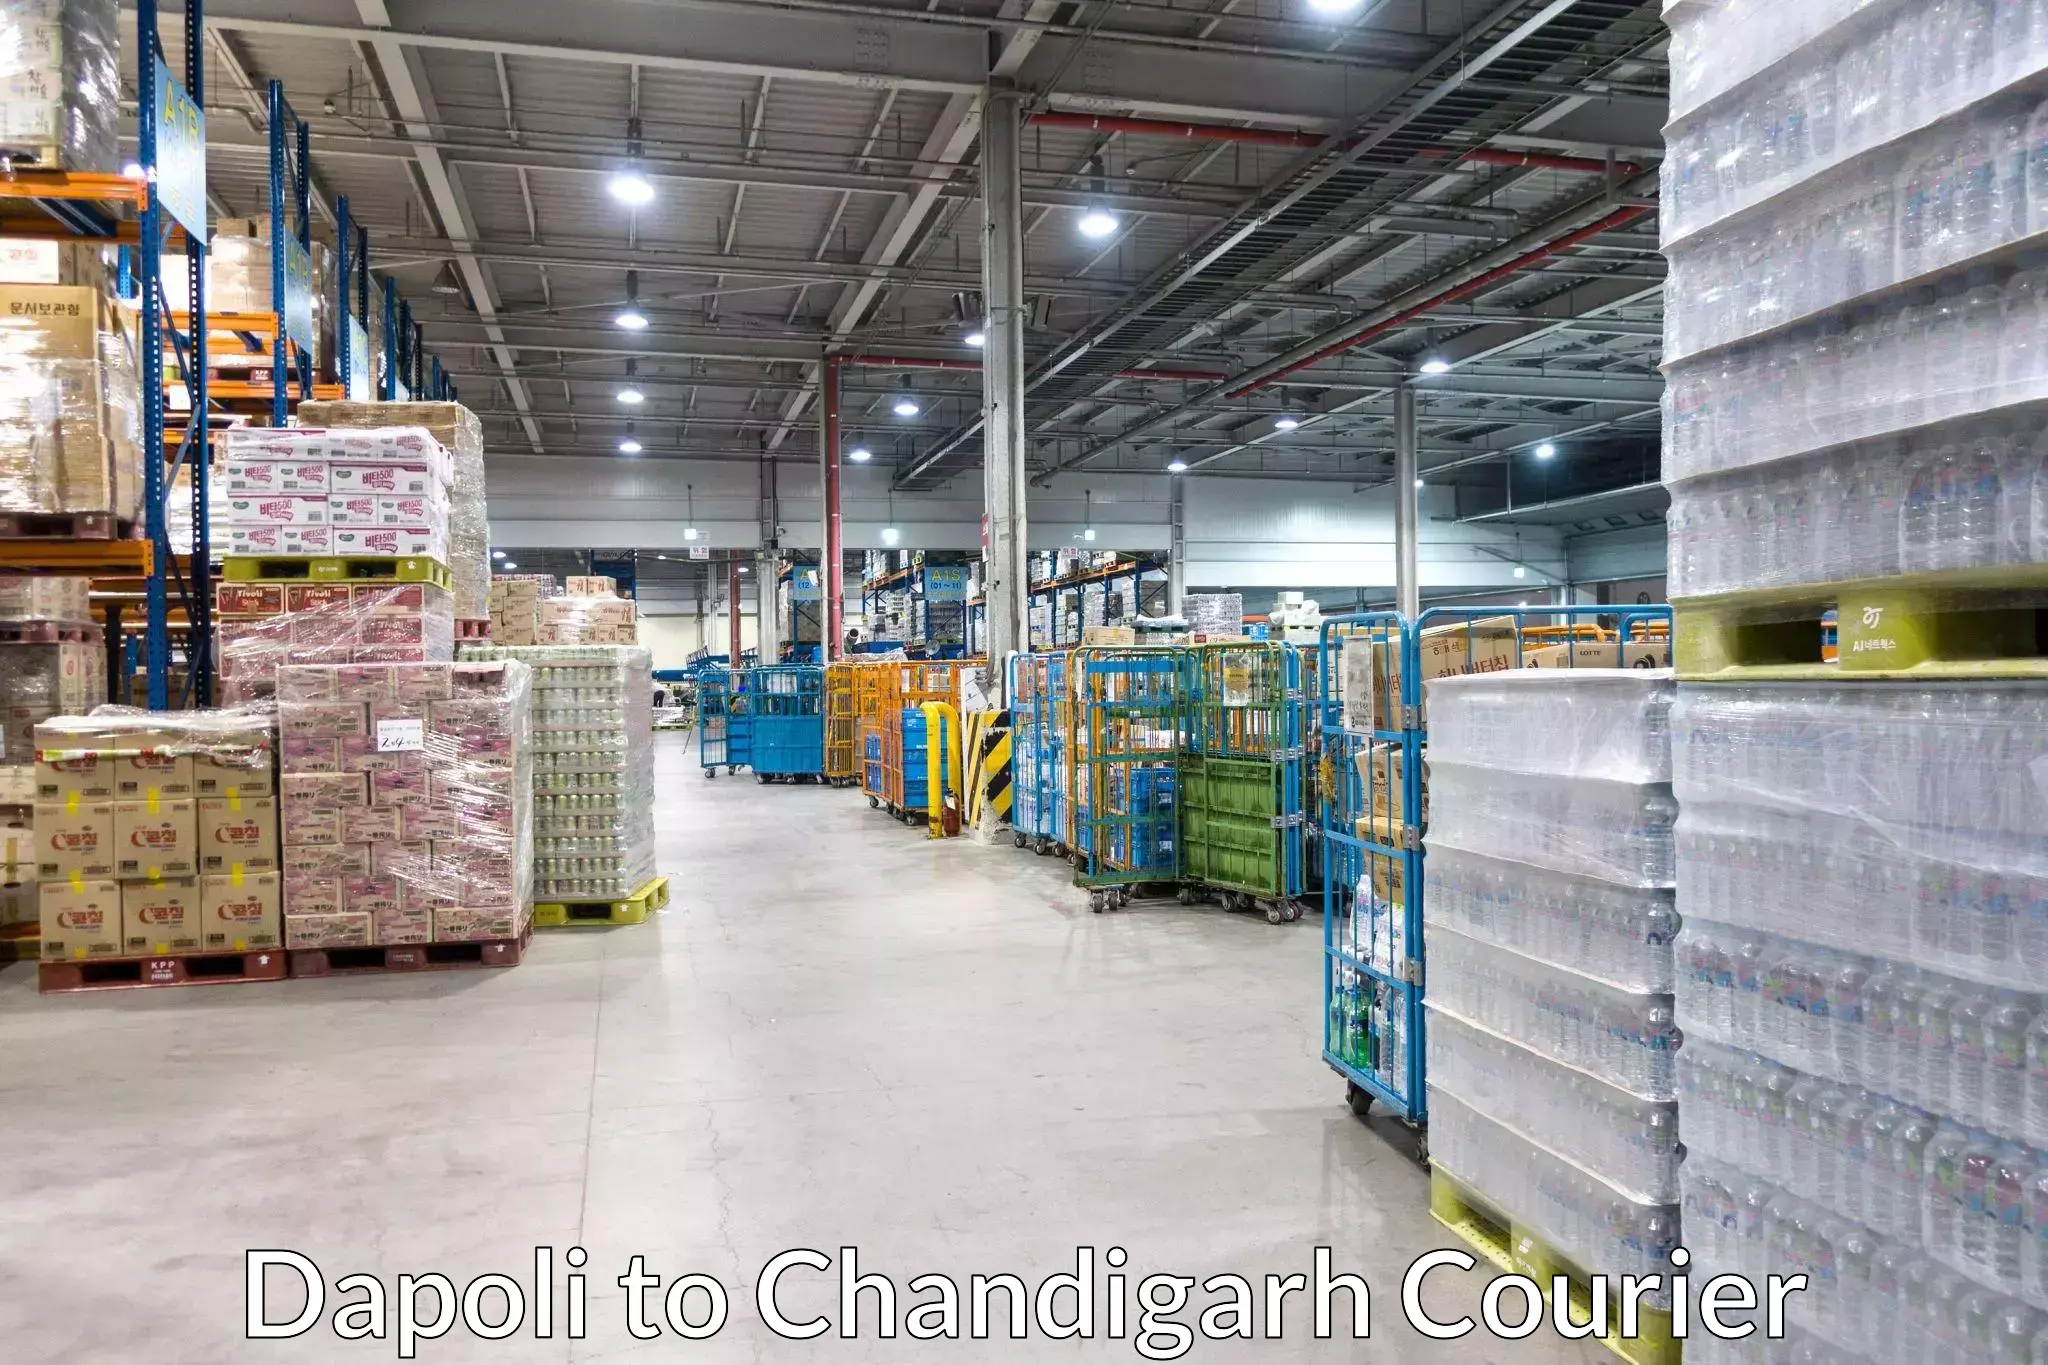 Smart shipping technology Dapoli to Chandigarh